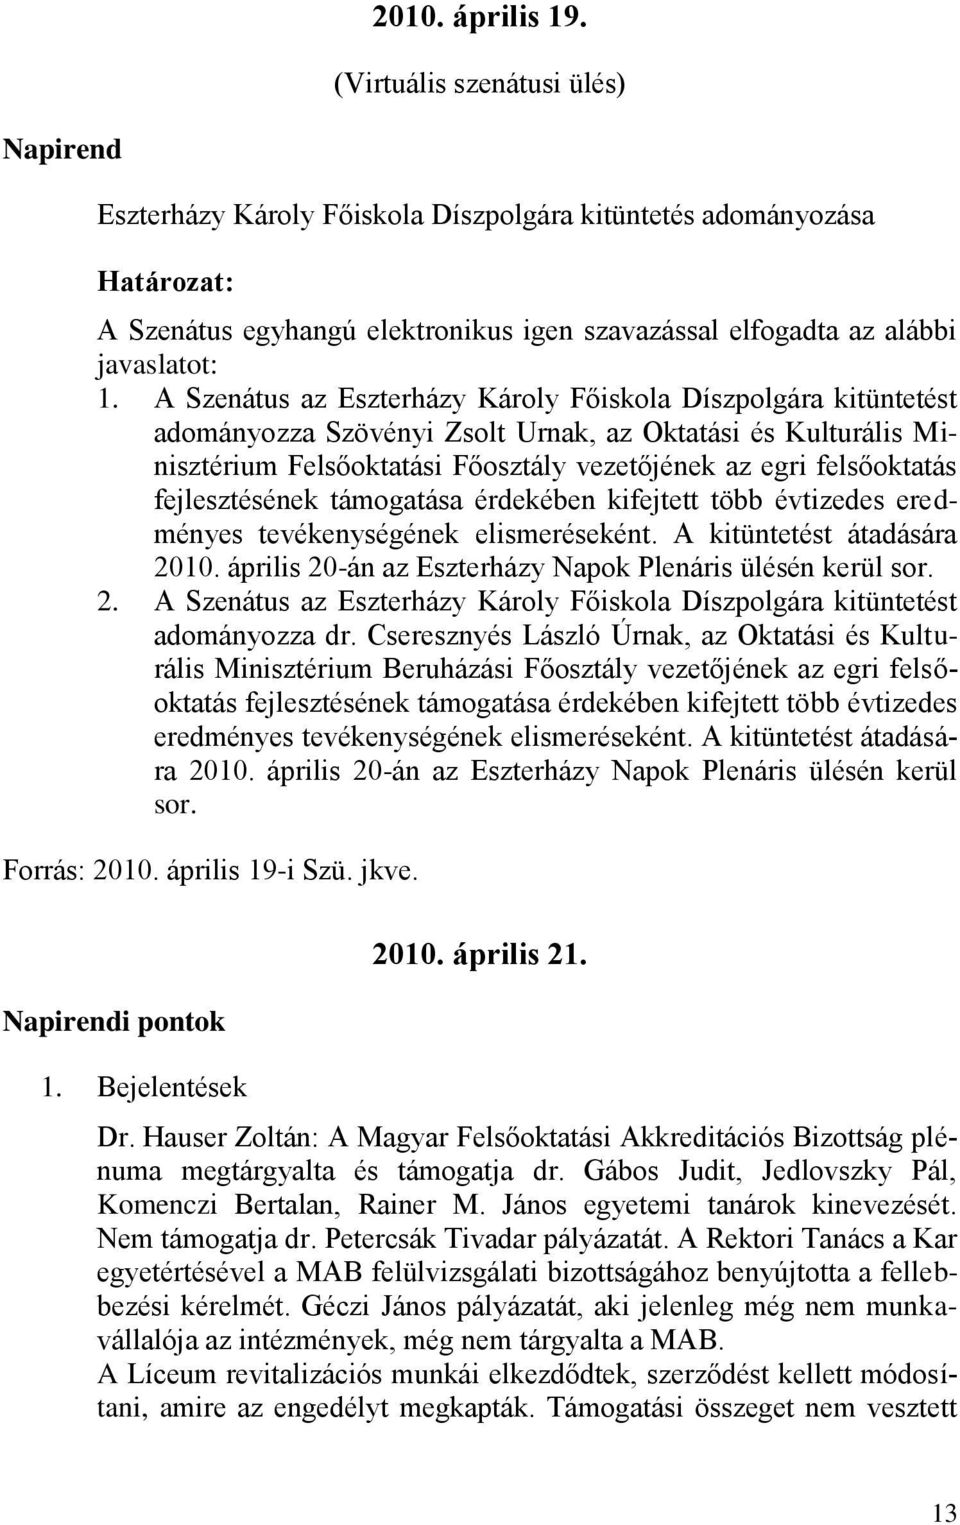 A Szenátus az Eszterházy Károly Főiskola Díszpolgára kitüntetést adományozza Szövényi Zsolt Urnak, az Oktatási és Kulturális Minisztérium Felsőoktatási Főosztály vezetőjének az egri felsőoktatás